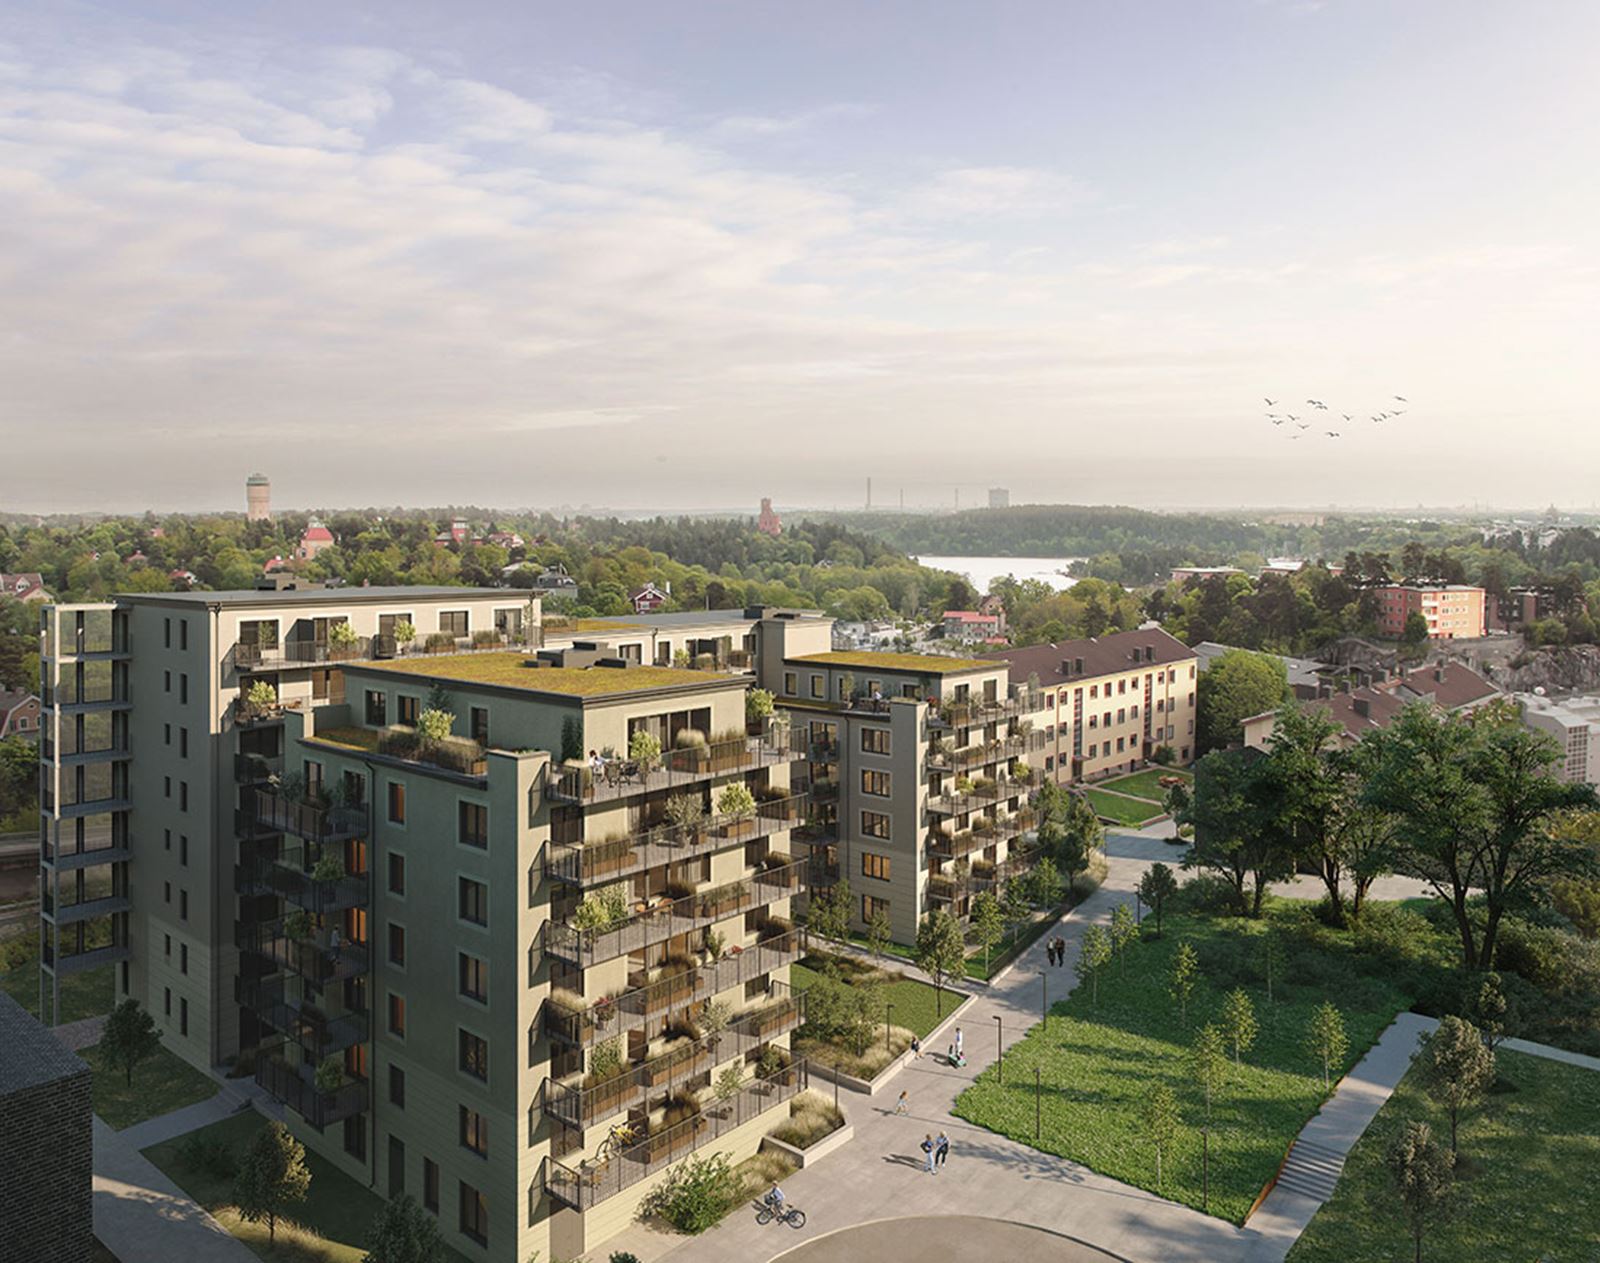 Nyproduktionsprojekt - förmedlas via mäklare på Bjurfors Nyproduktion, Sveriges ledande aktör inom försäljning av nyproducerade bostäder. Här finns nybyggda hus och lägenheter för dig som vill köpa ny bostad. 